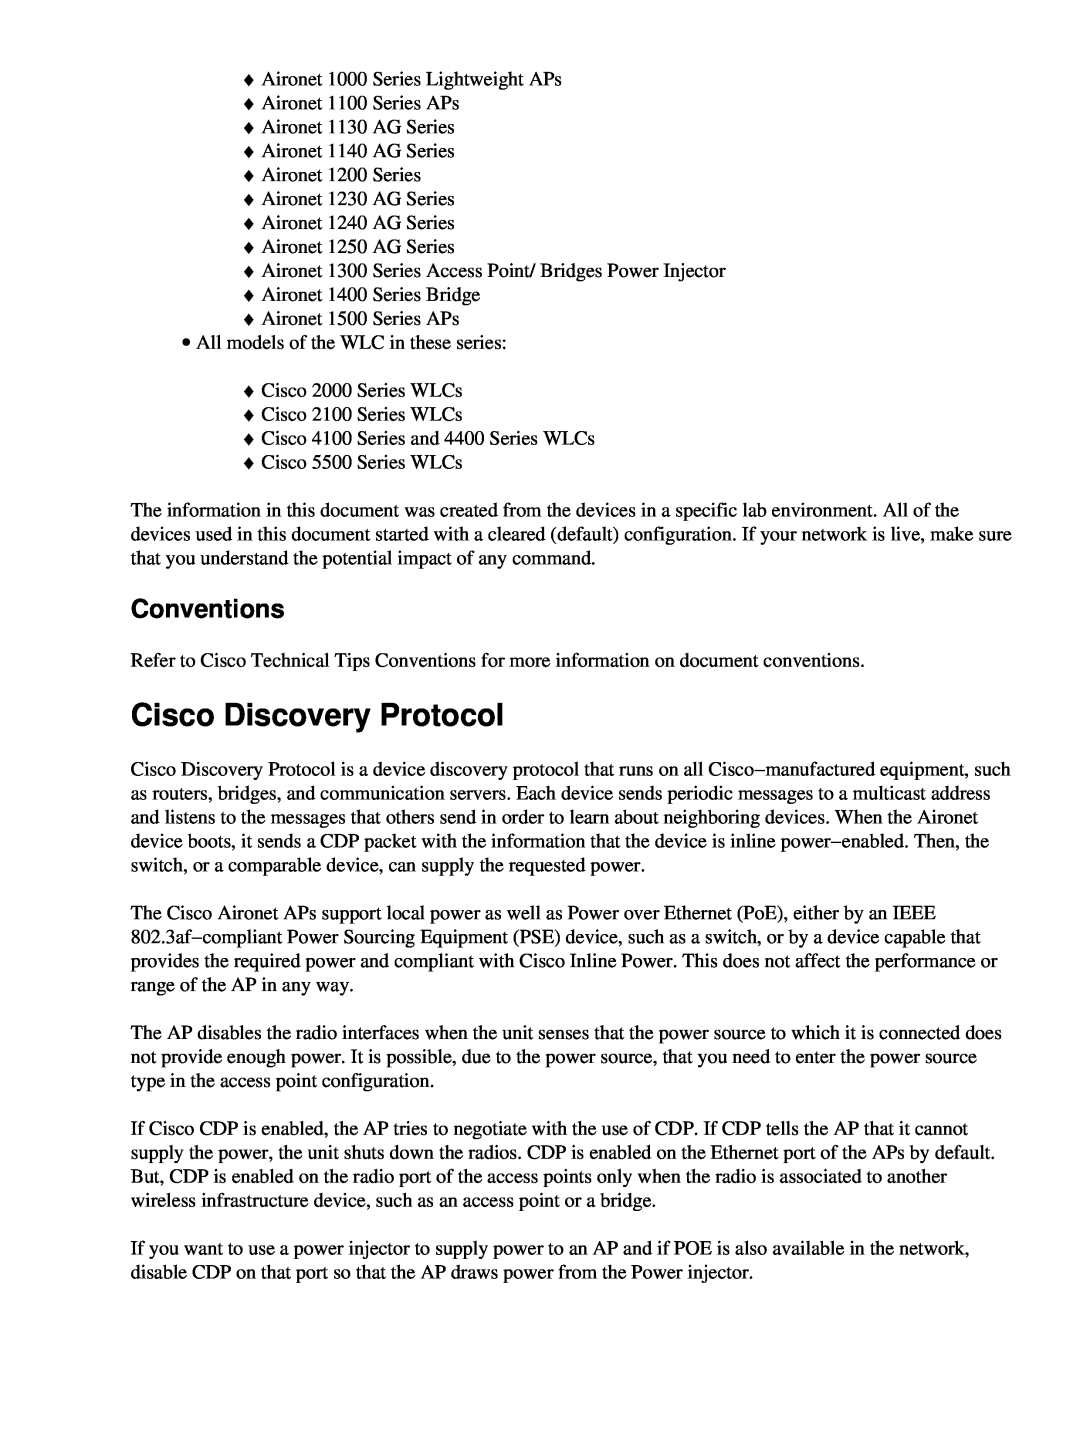 Cisco Systems 2008M-8i, UCSCRAIDMZ220 manual Cisco Discovery Protocol, Conventions 